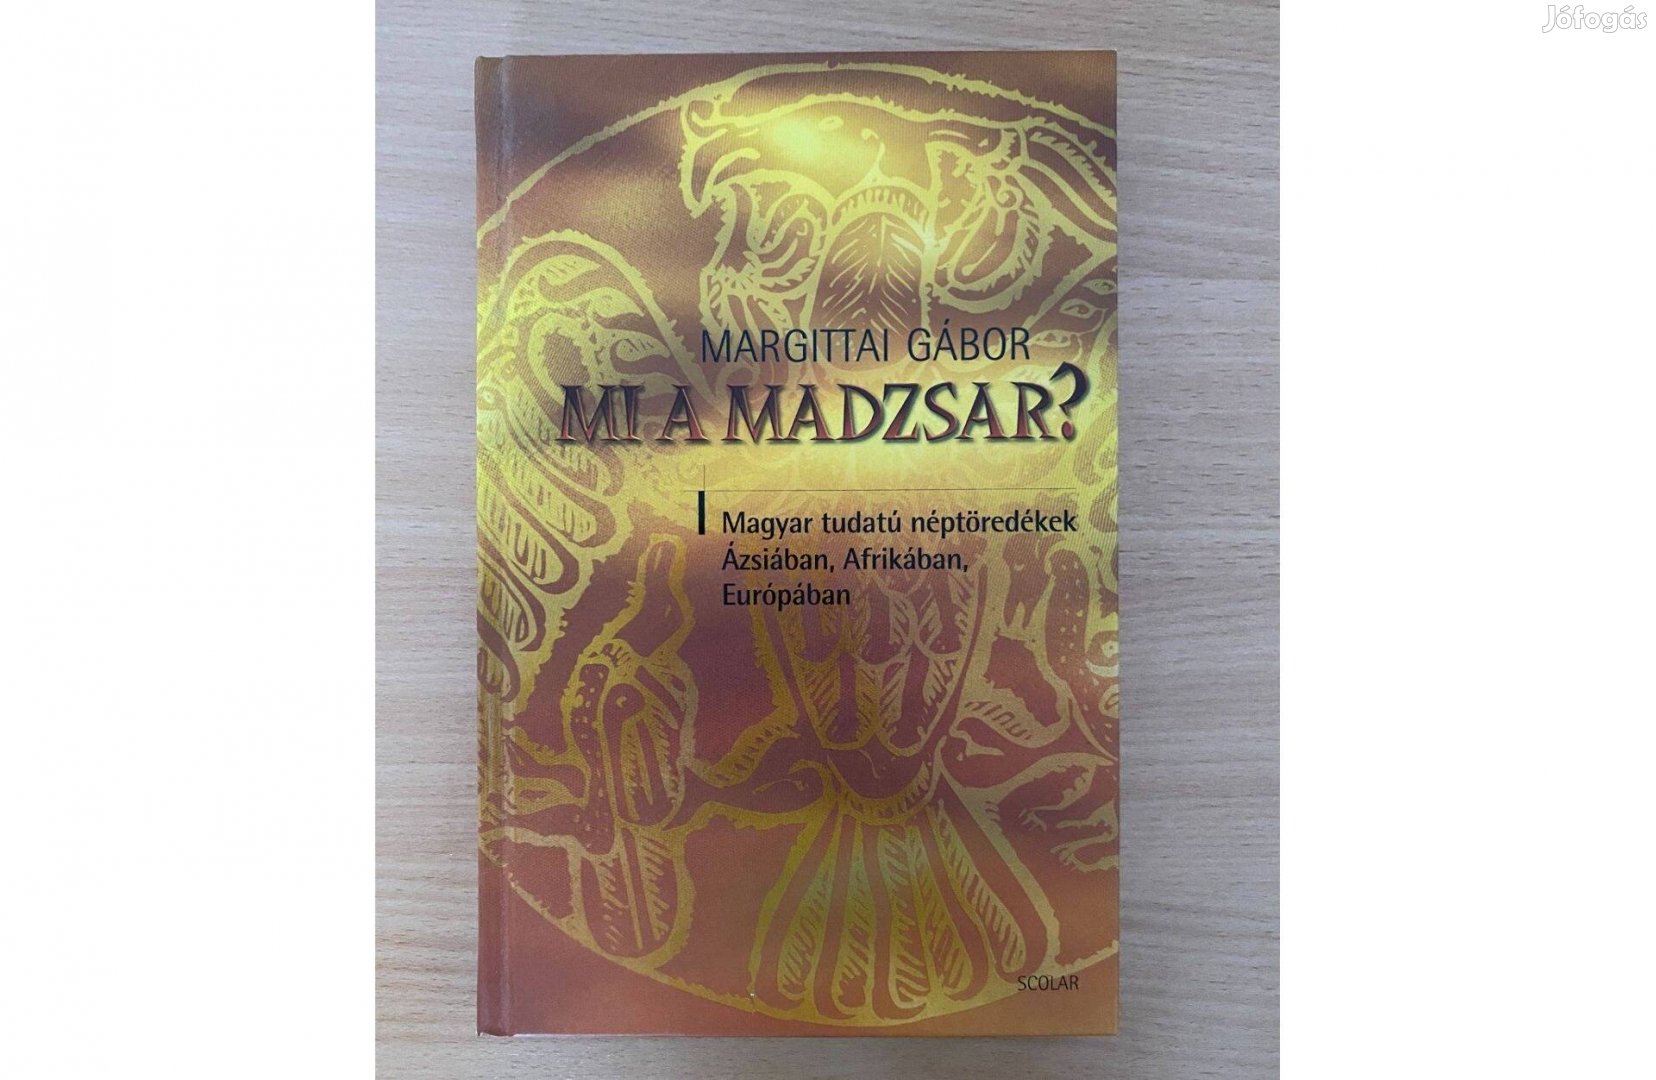 Margittai Gábor: Mi a madzsar? című könyv